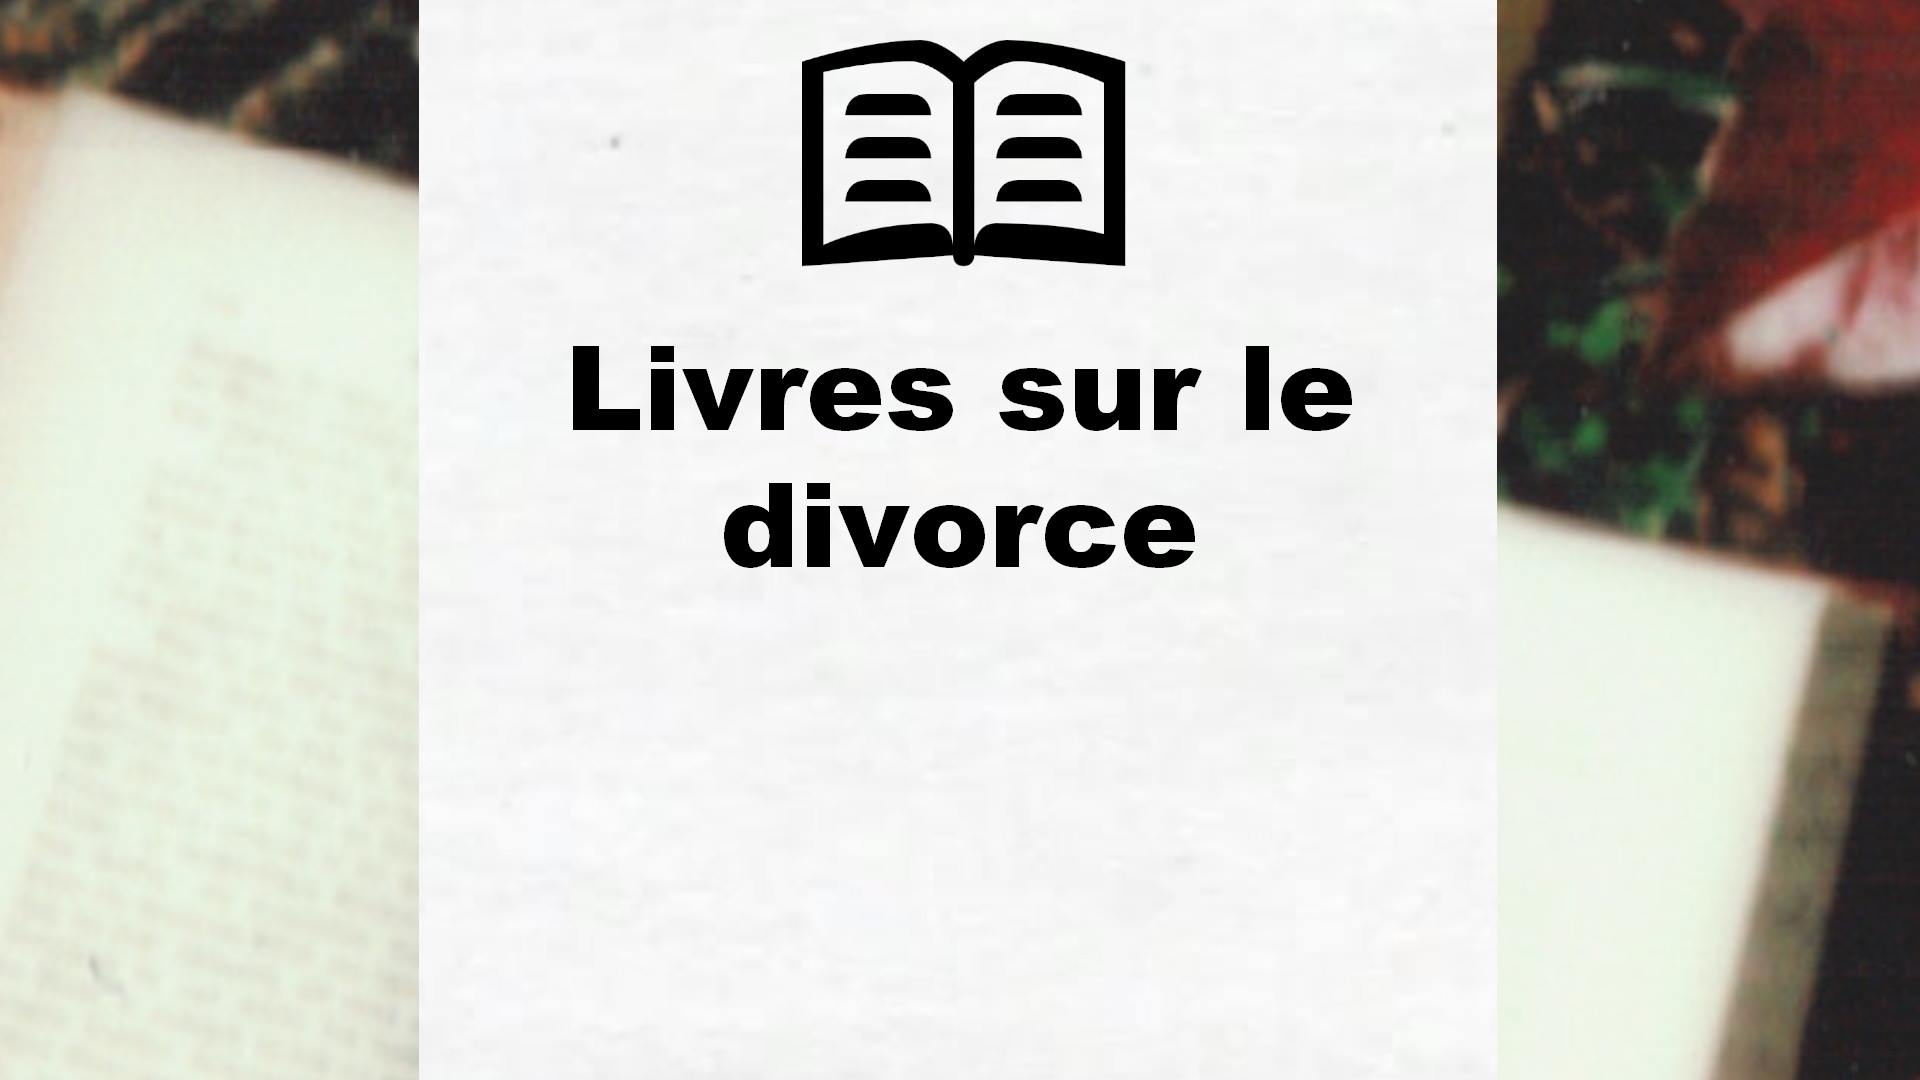 Livres sur le divorce